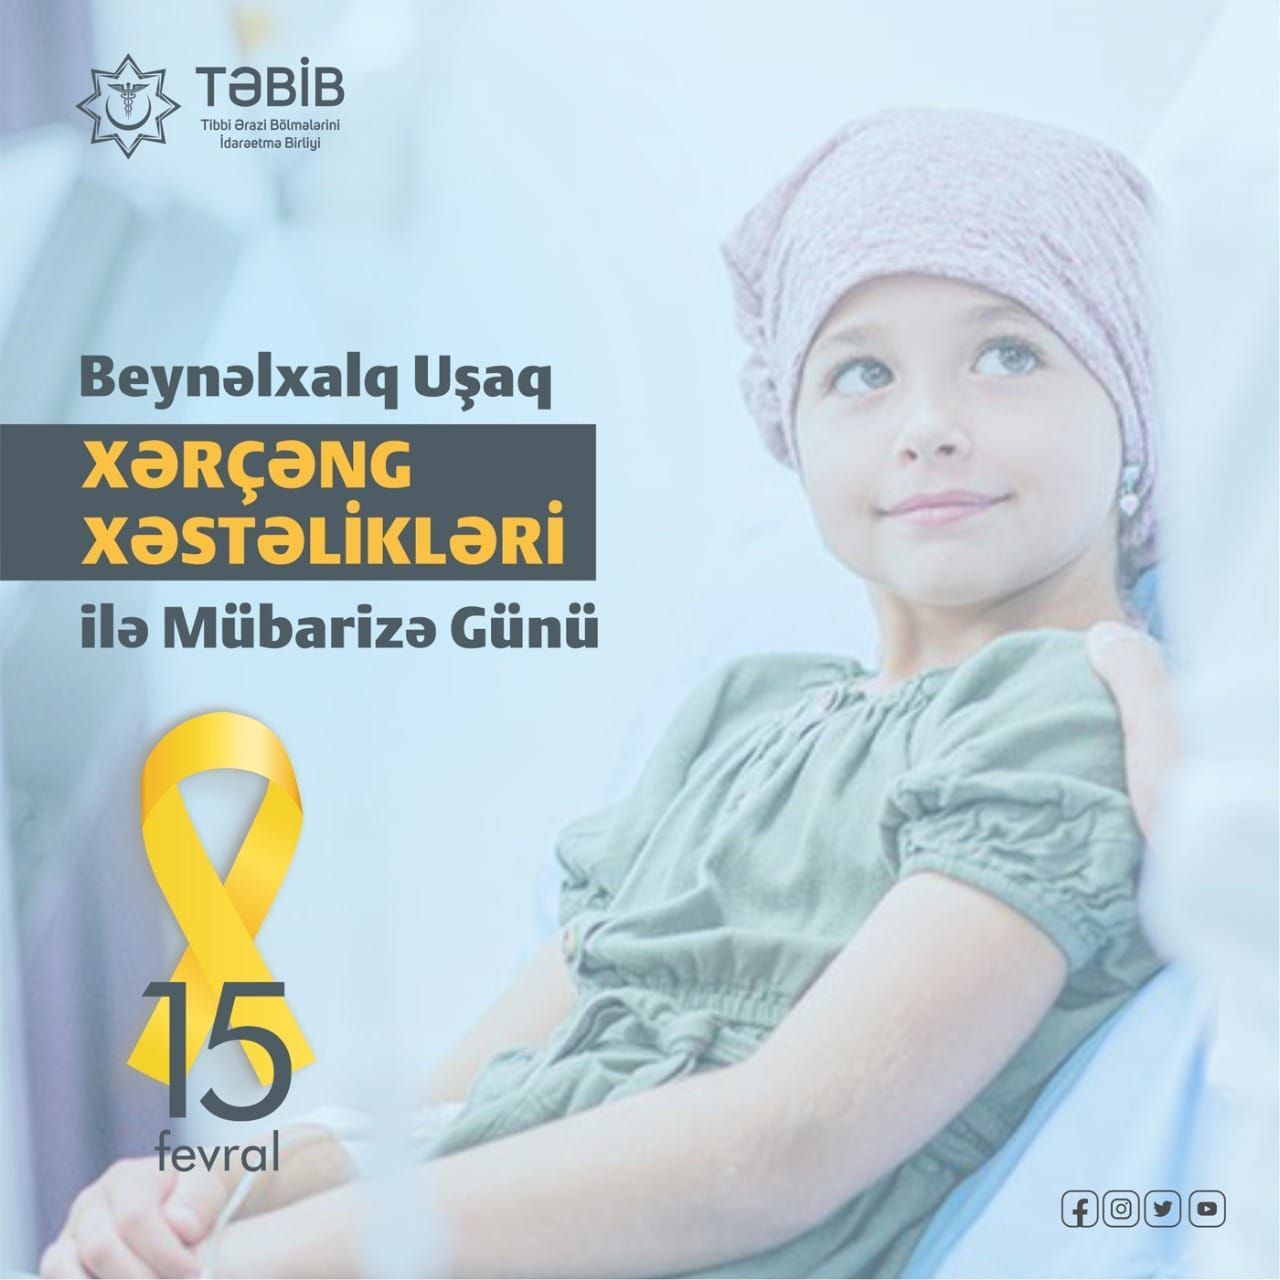 15 fevral : Dünya Uşaq Onkoloji xəstəliklər günü -  Uşaqlarda xərçəngin əlamətləri